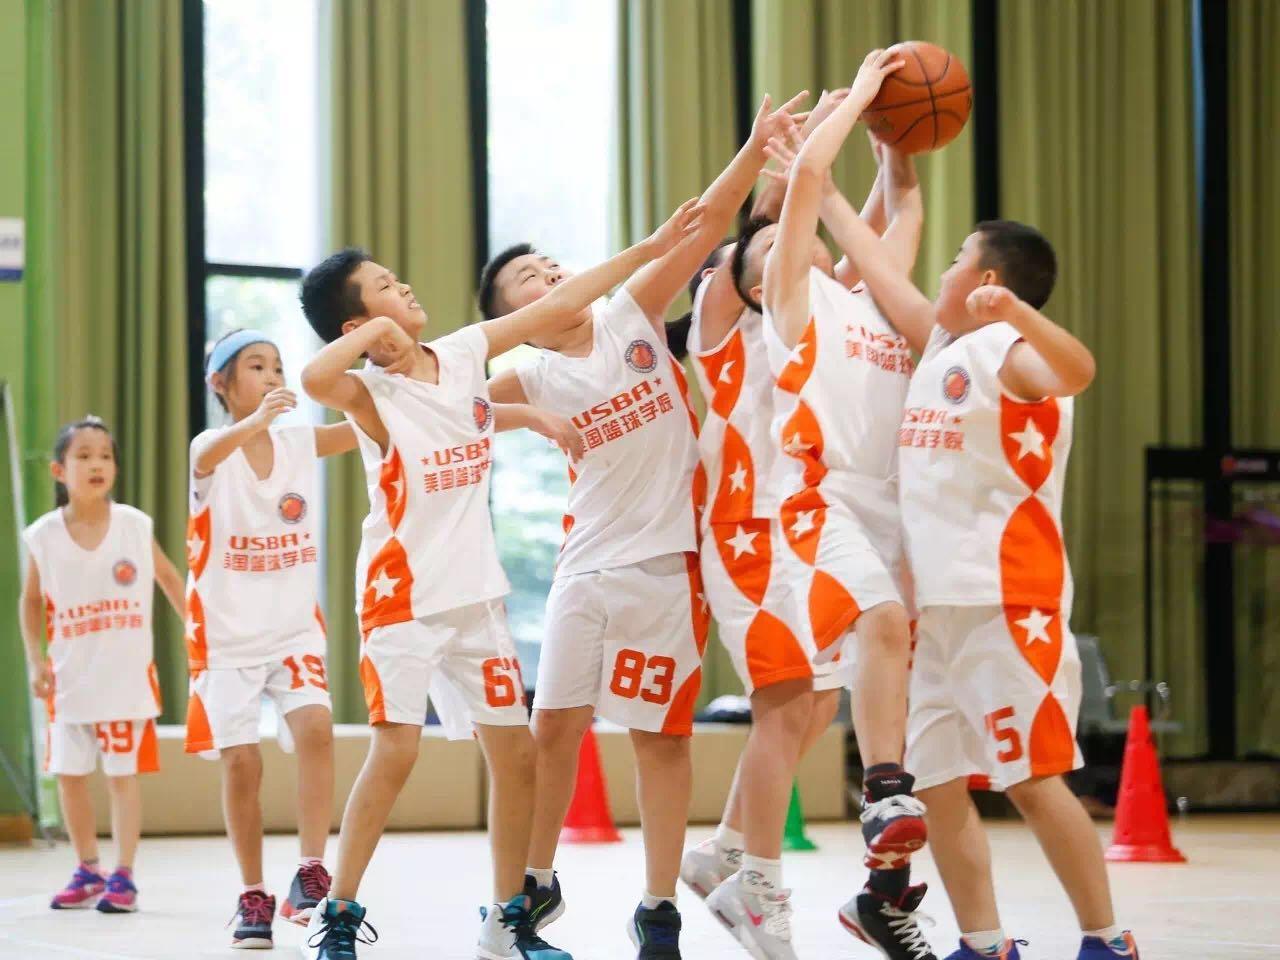 最新课程 - 练盟青少年篮球训练营-官方网站（全国招生）-广州萌芽国内权威青少年篮球培训机构